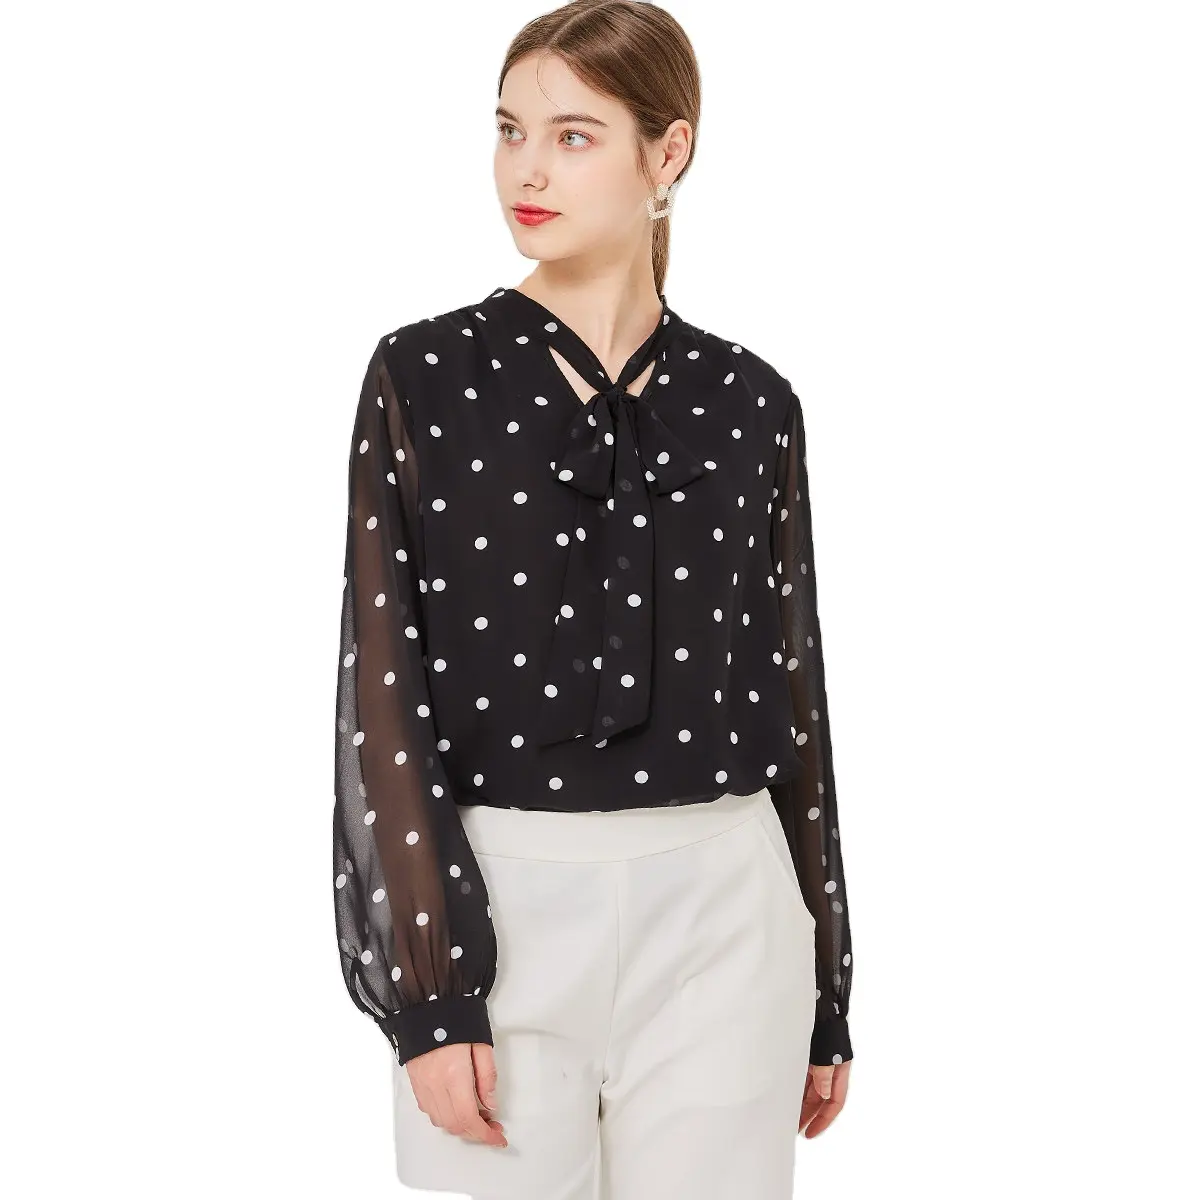 Women's Blouse Long sleeves Dot Print Chiffon Top Black Chiffon With White Dot Blouse